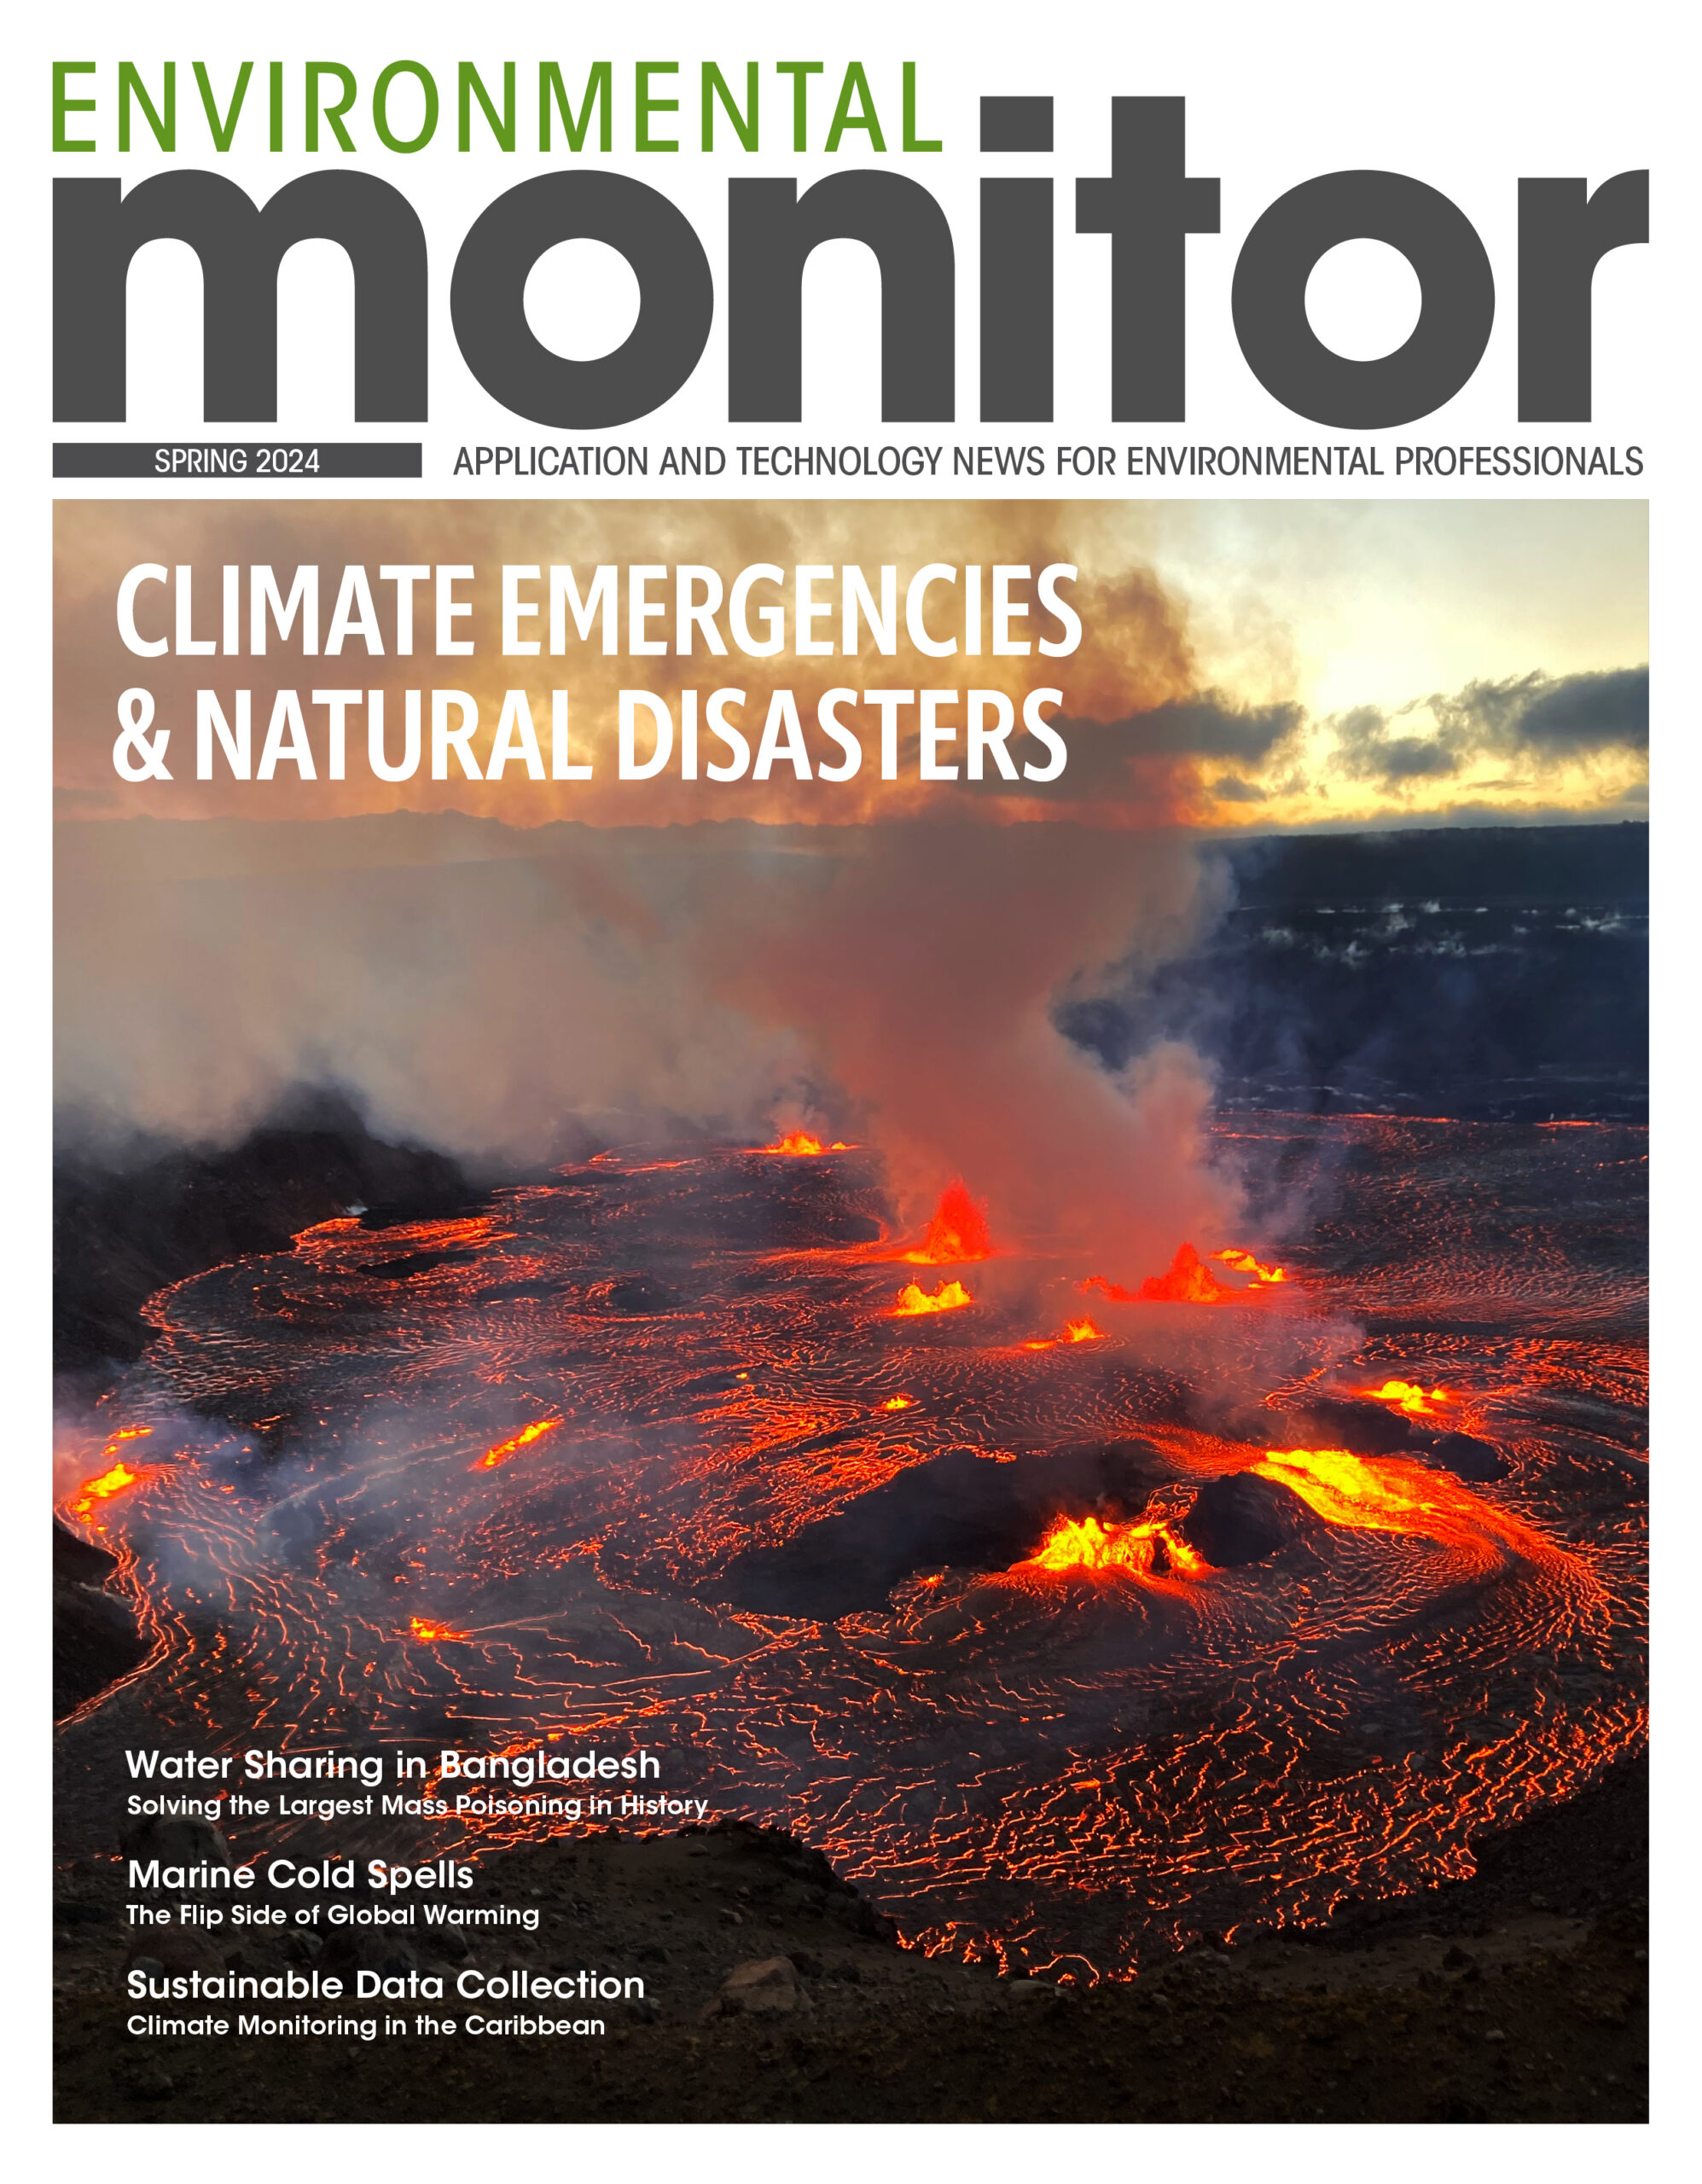 Environmental Monitor Spring 2024: Climate Emergencies & Natural Disasters